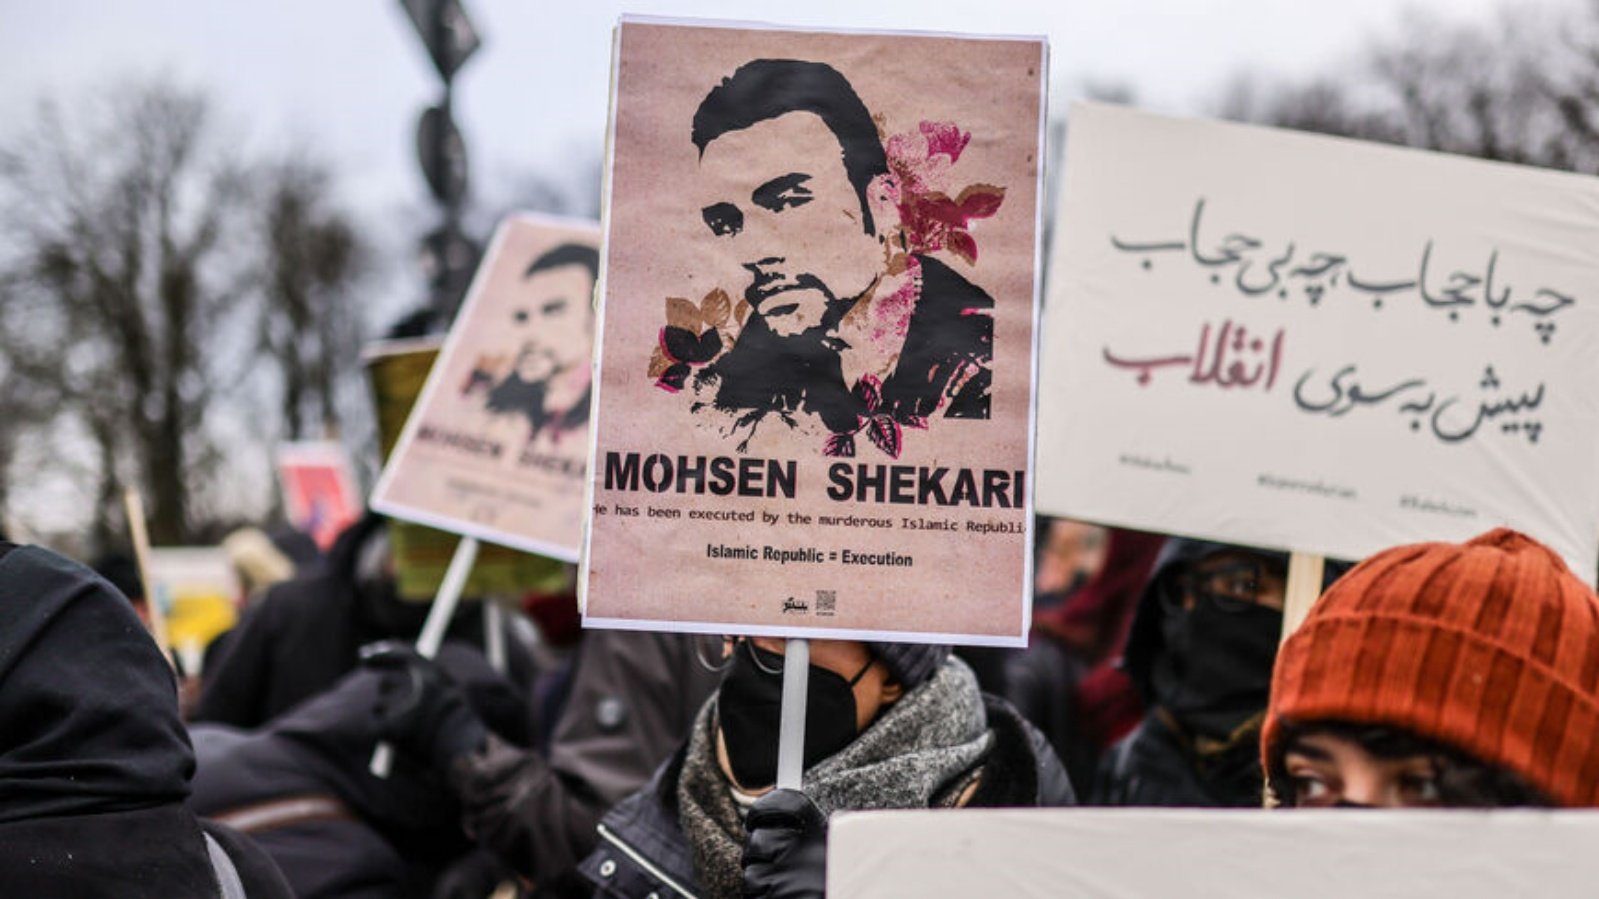 أحد المشاركين يرفع لافتة تحمل صورة المتظاهر الإيراني محسن شكاري الذي تم إعدامه مؤخرًا، أثناء احتجاج تضامنًا مع المظاهرات المستمرة في إيران وضد نظام الجمهورية الإسلامية، أمام بوابة براندنبورغ في 10 ديسمبر 2022، في برلين، ألمانيا